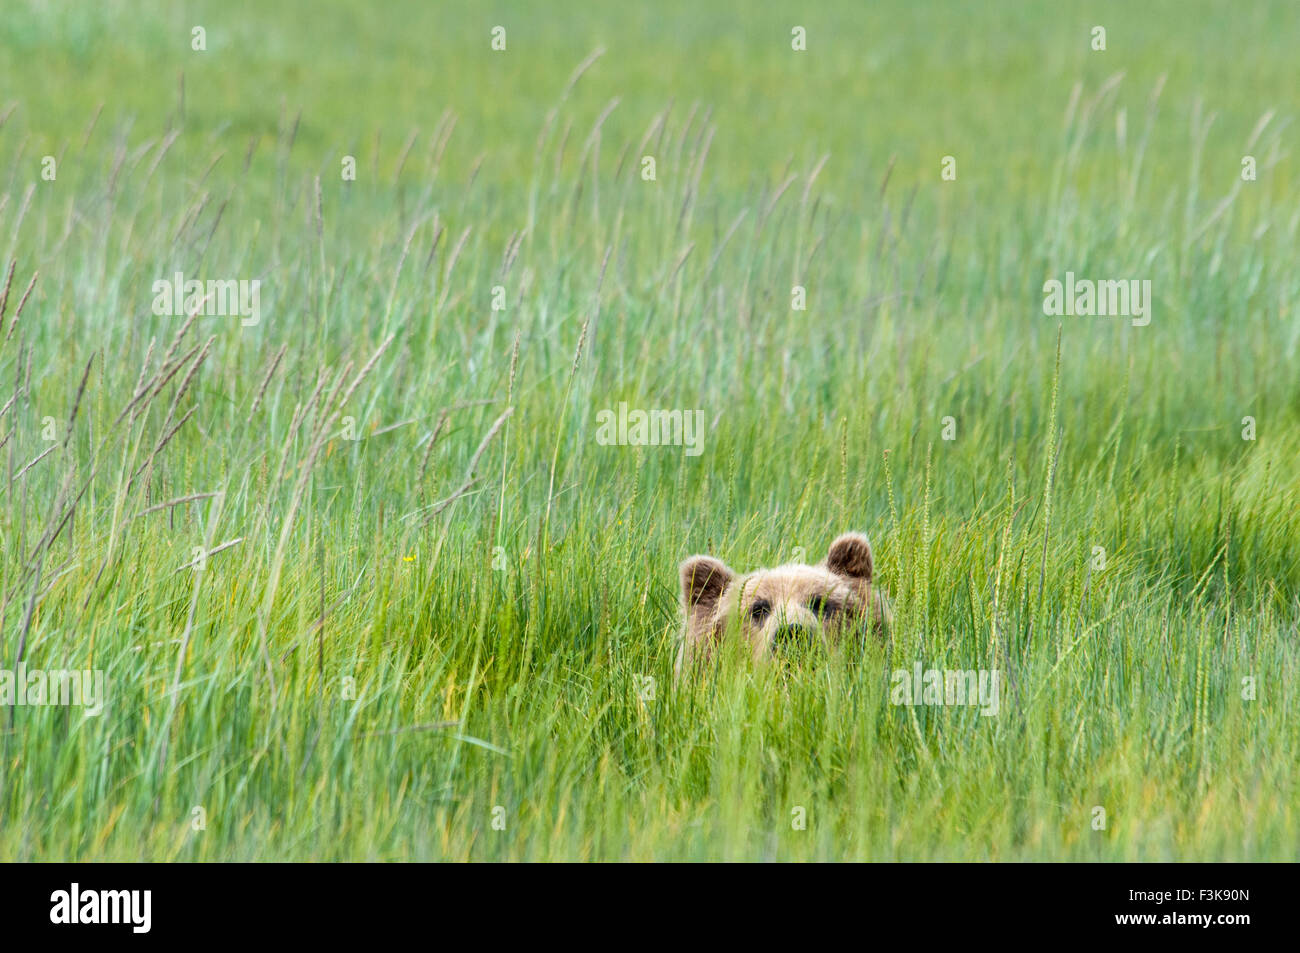 Adultos, Oso Grizzly Ursus arctos, Peeking Up de verde juncia hierba, Lake Clark National Park, Alaska, EE.UU. Foto de stock